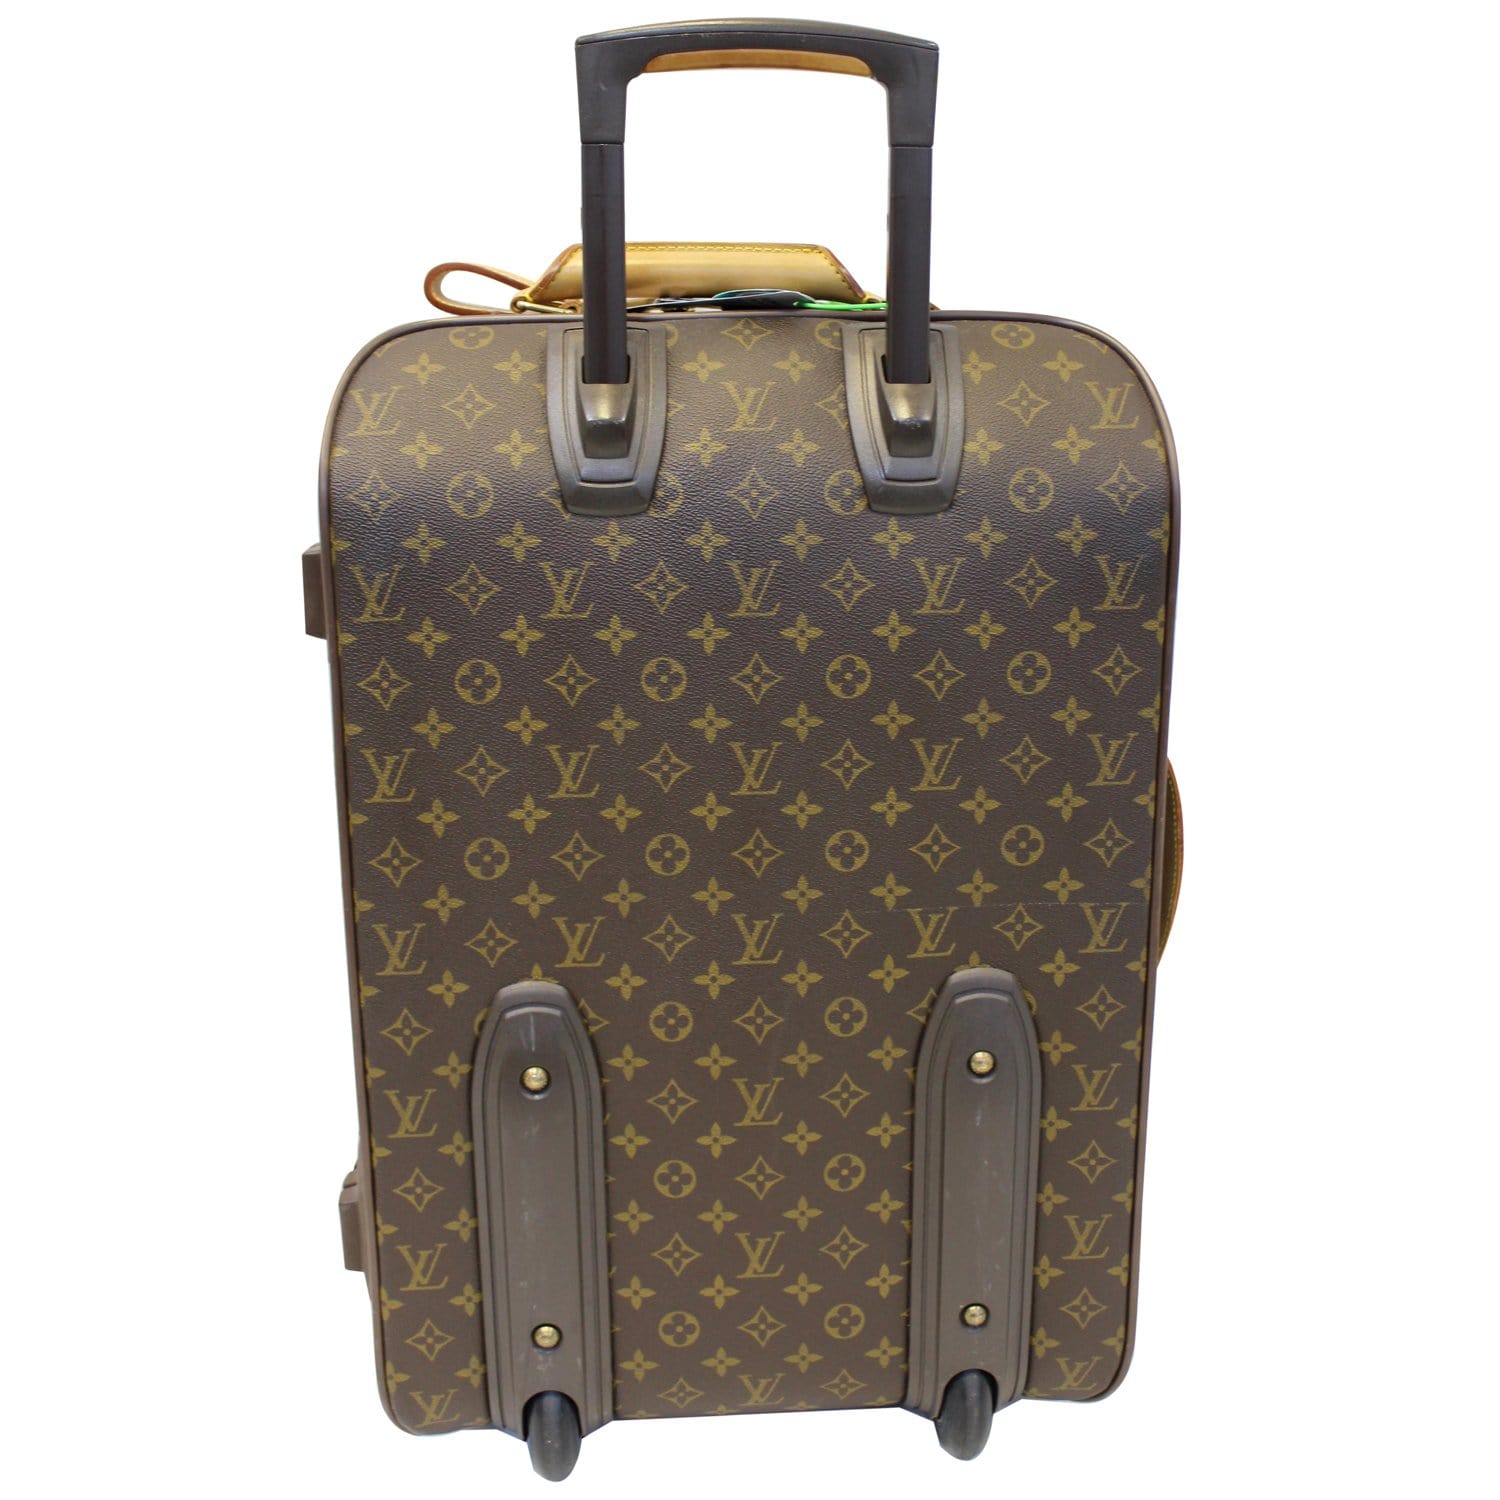 Louis Vuitton, Monogram Canvas Laptop/Business Bag, rubb…